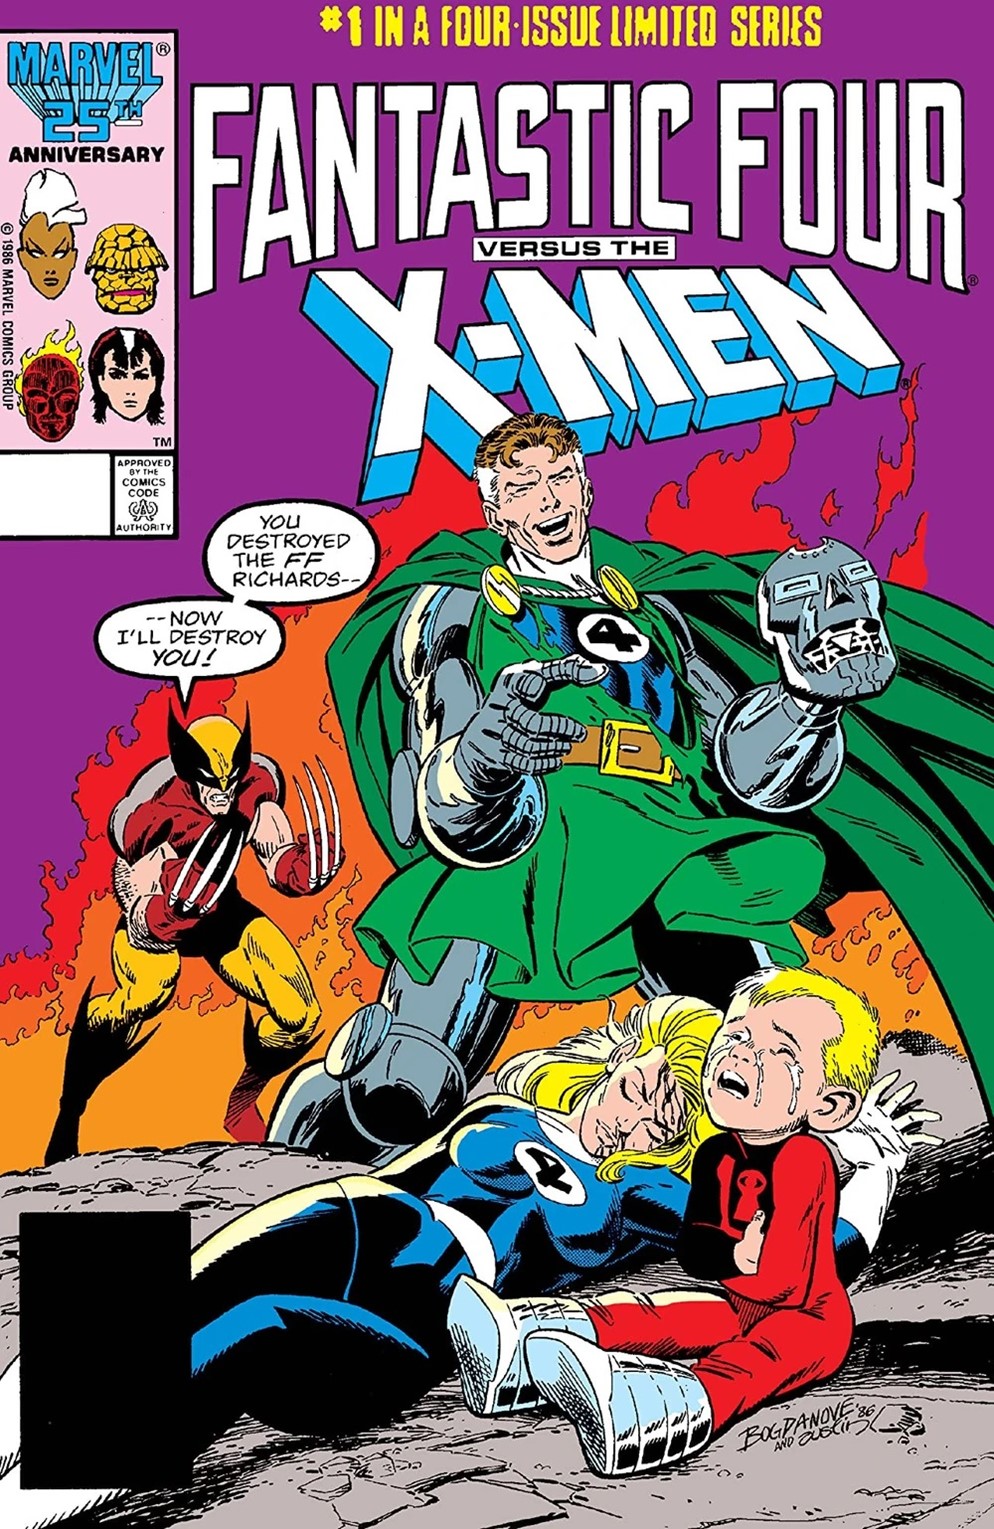 Fantastic Four Vs X-Men Limited Series Bundle Issues 1-4